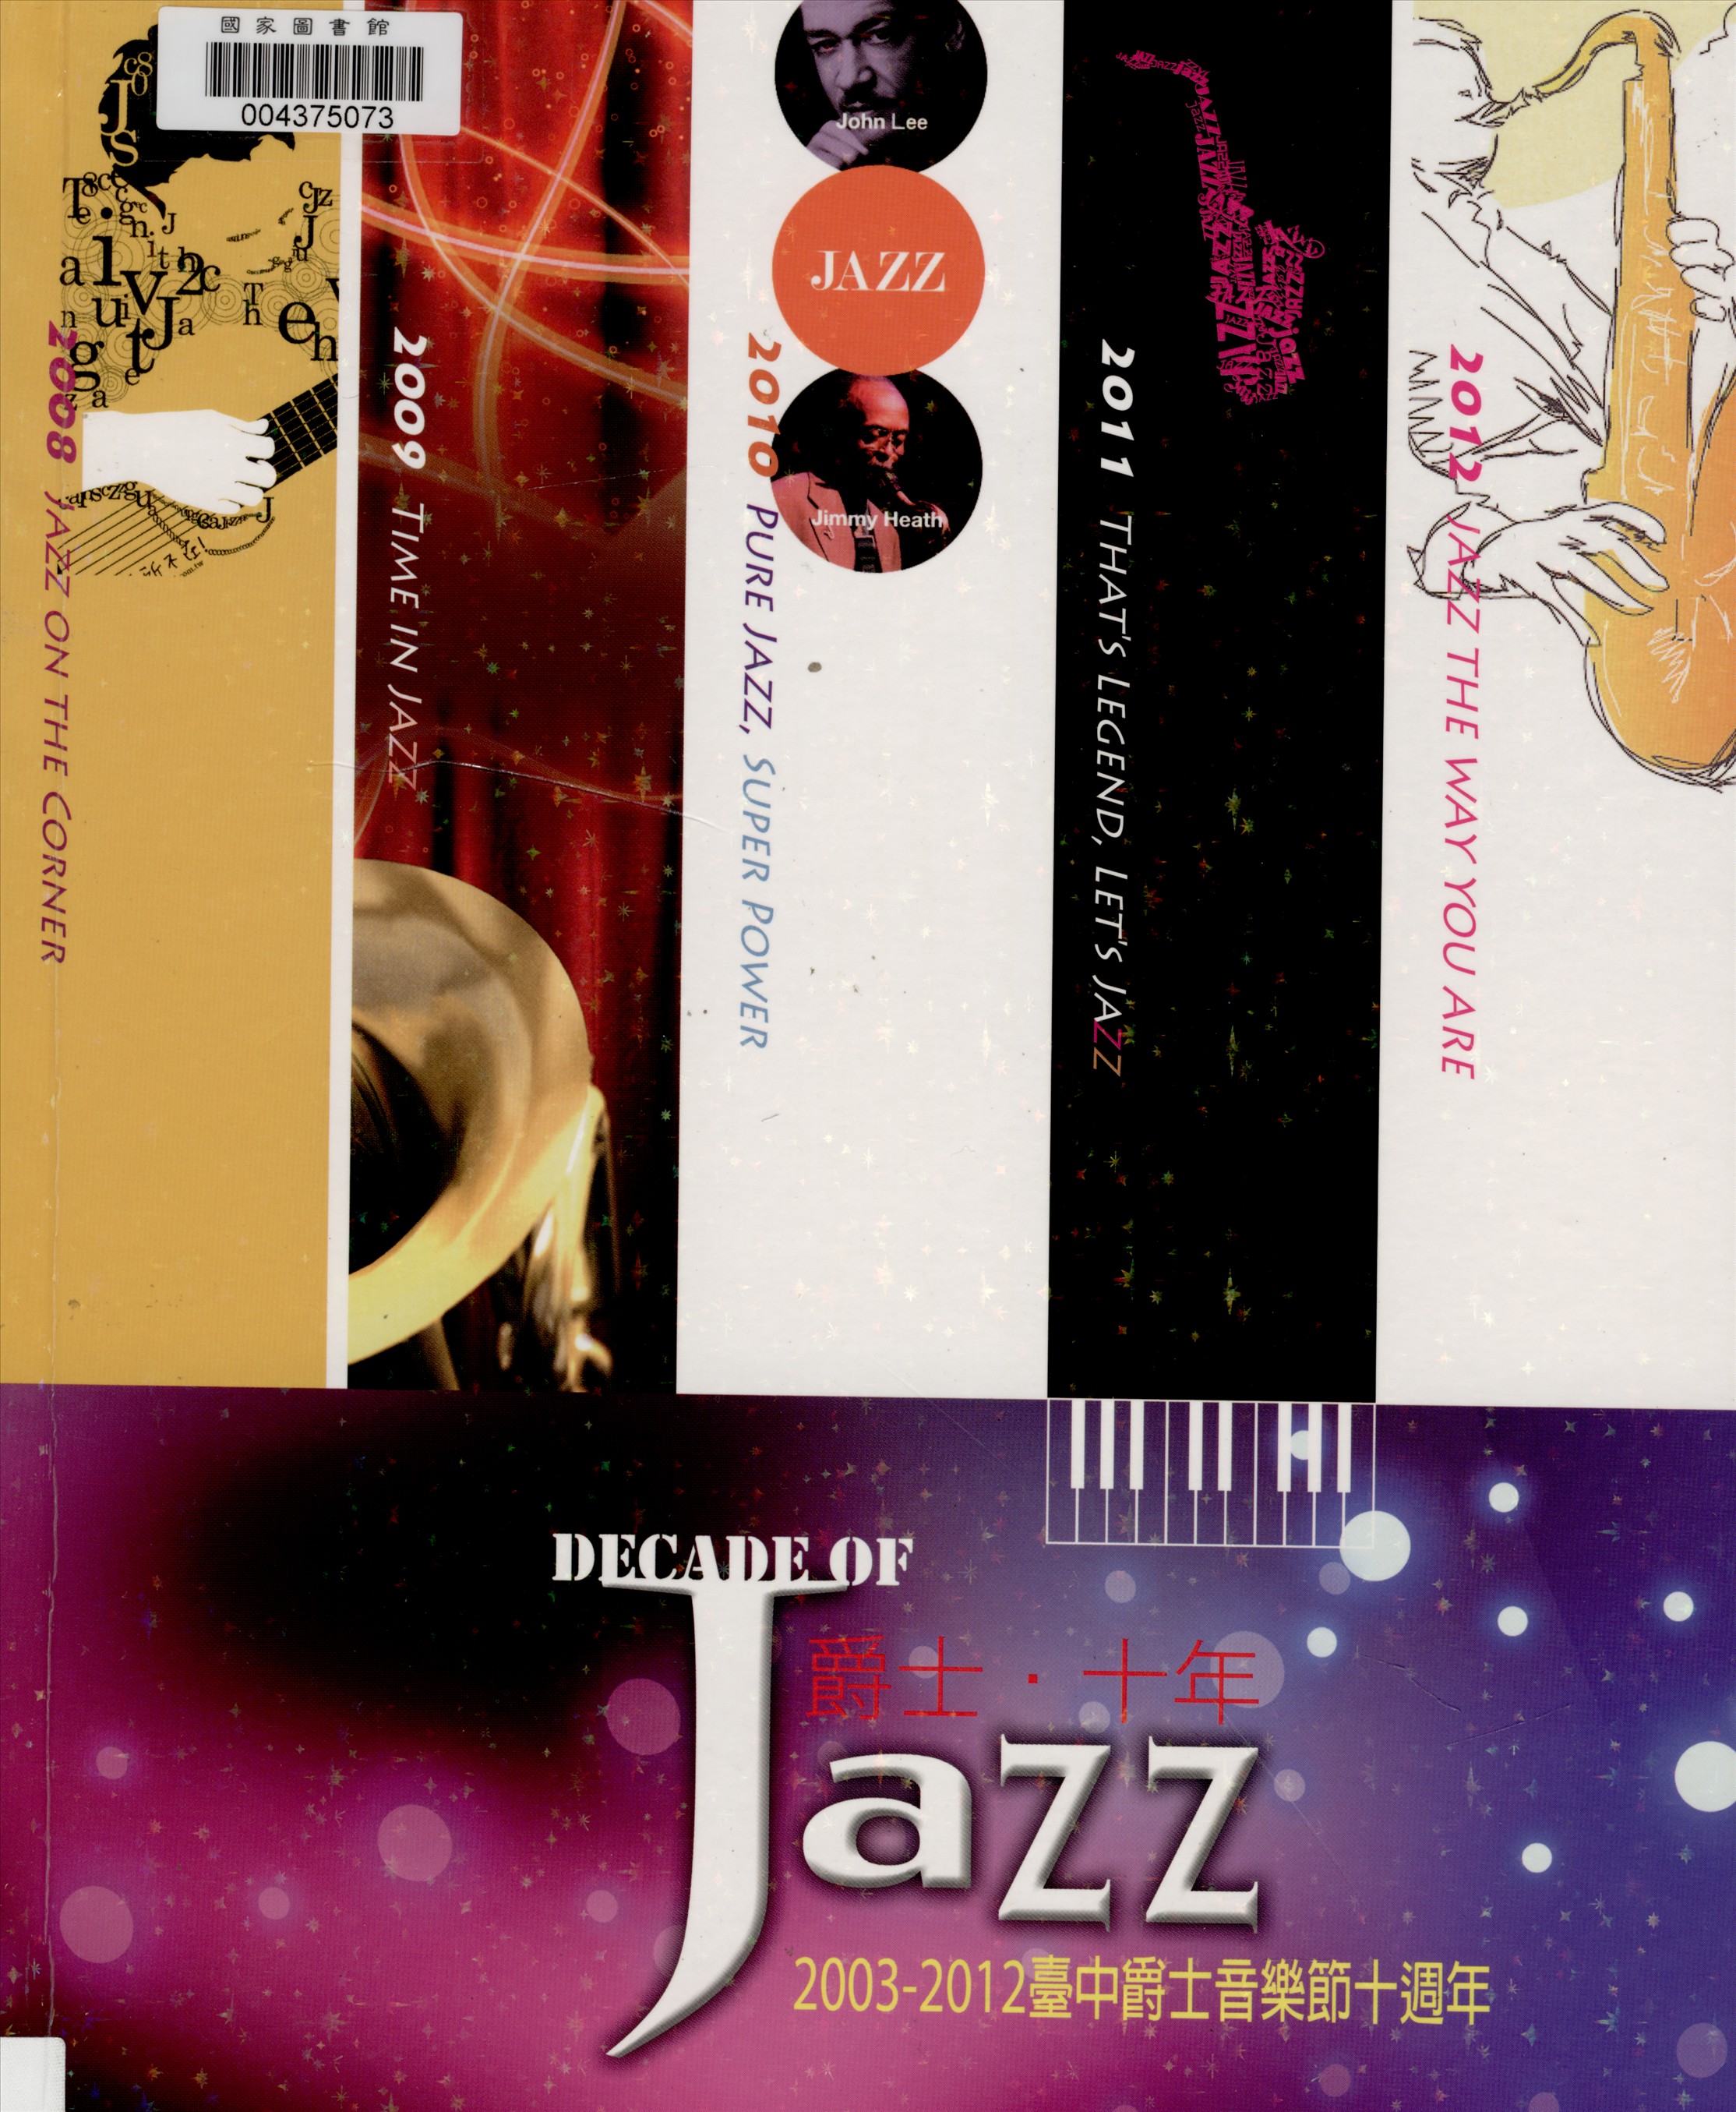 2003-2012 decade of jazz臺中爵士十年